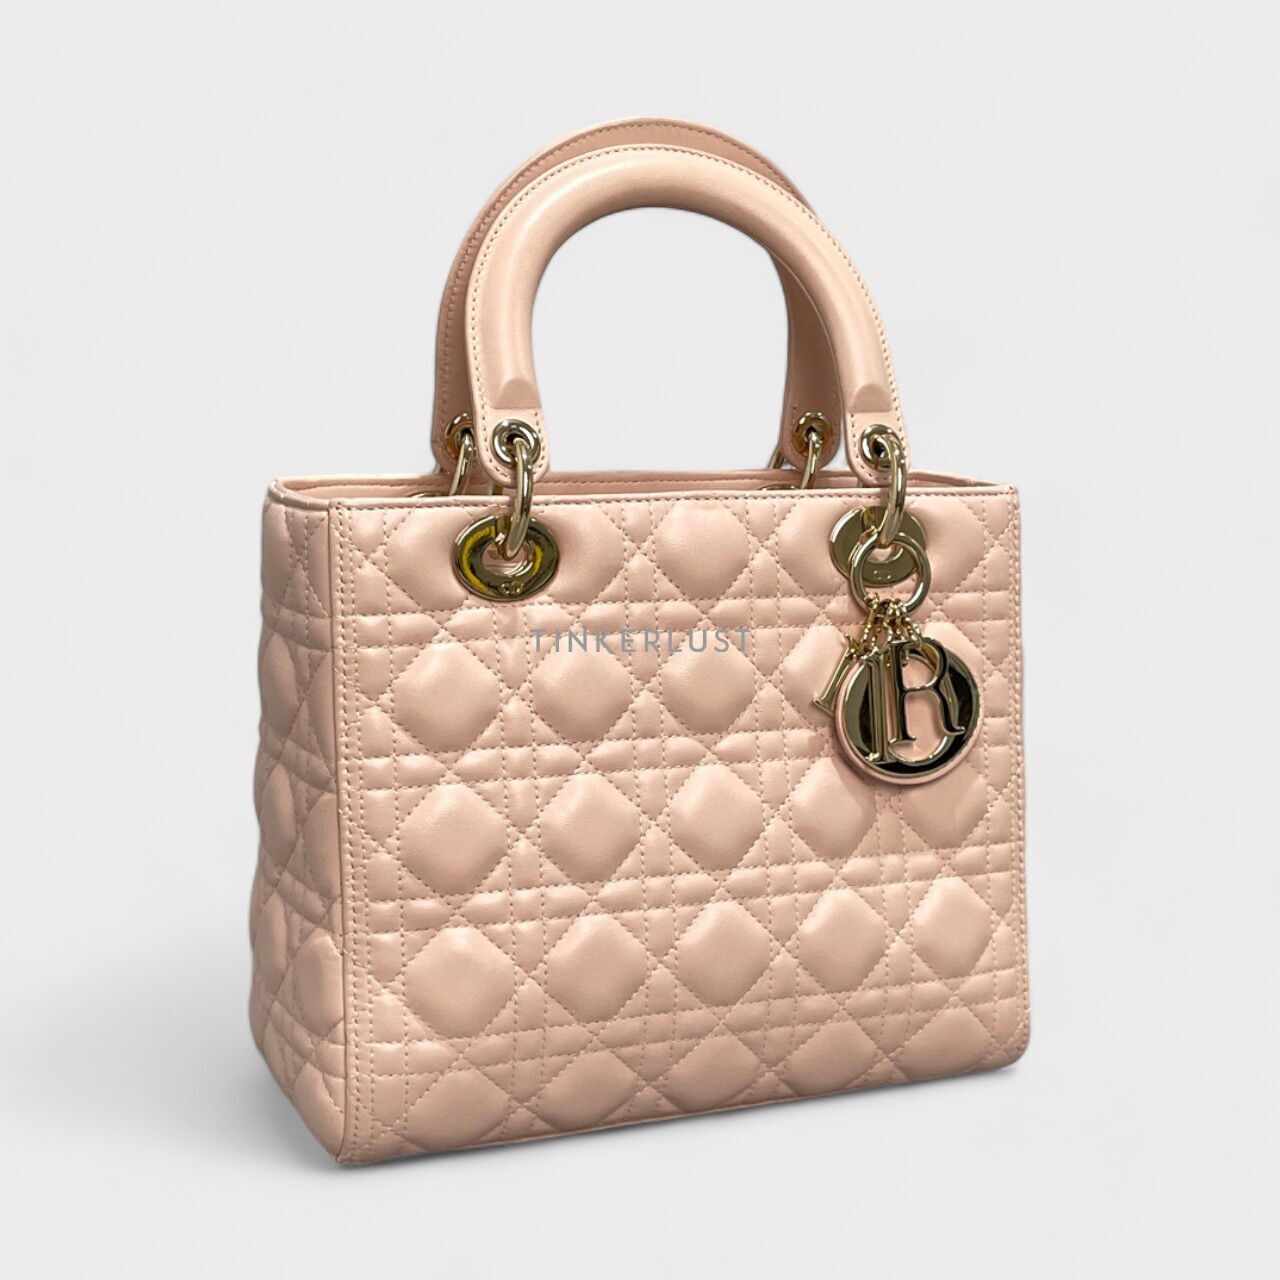 Christian Dior Lady Dior Medium Pink GHW Satchel Bag